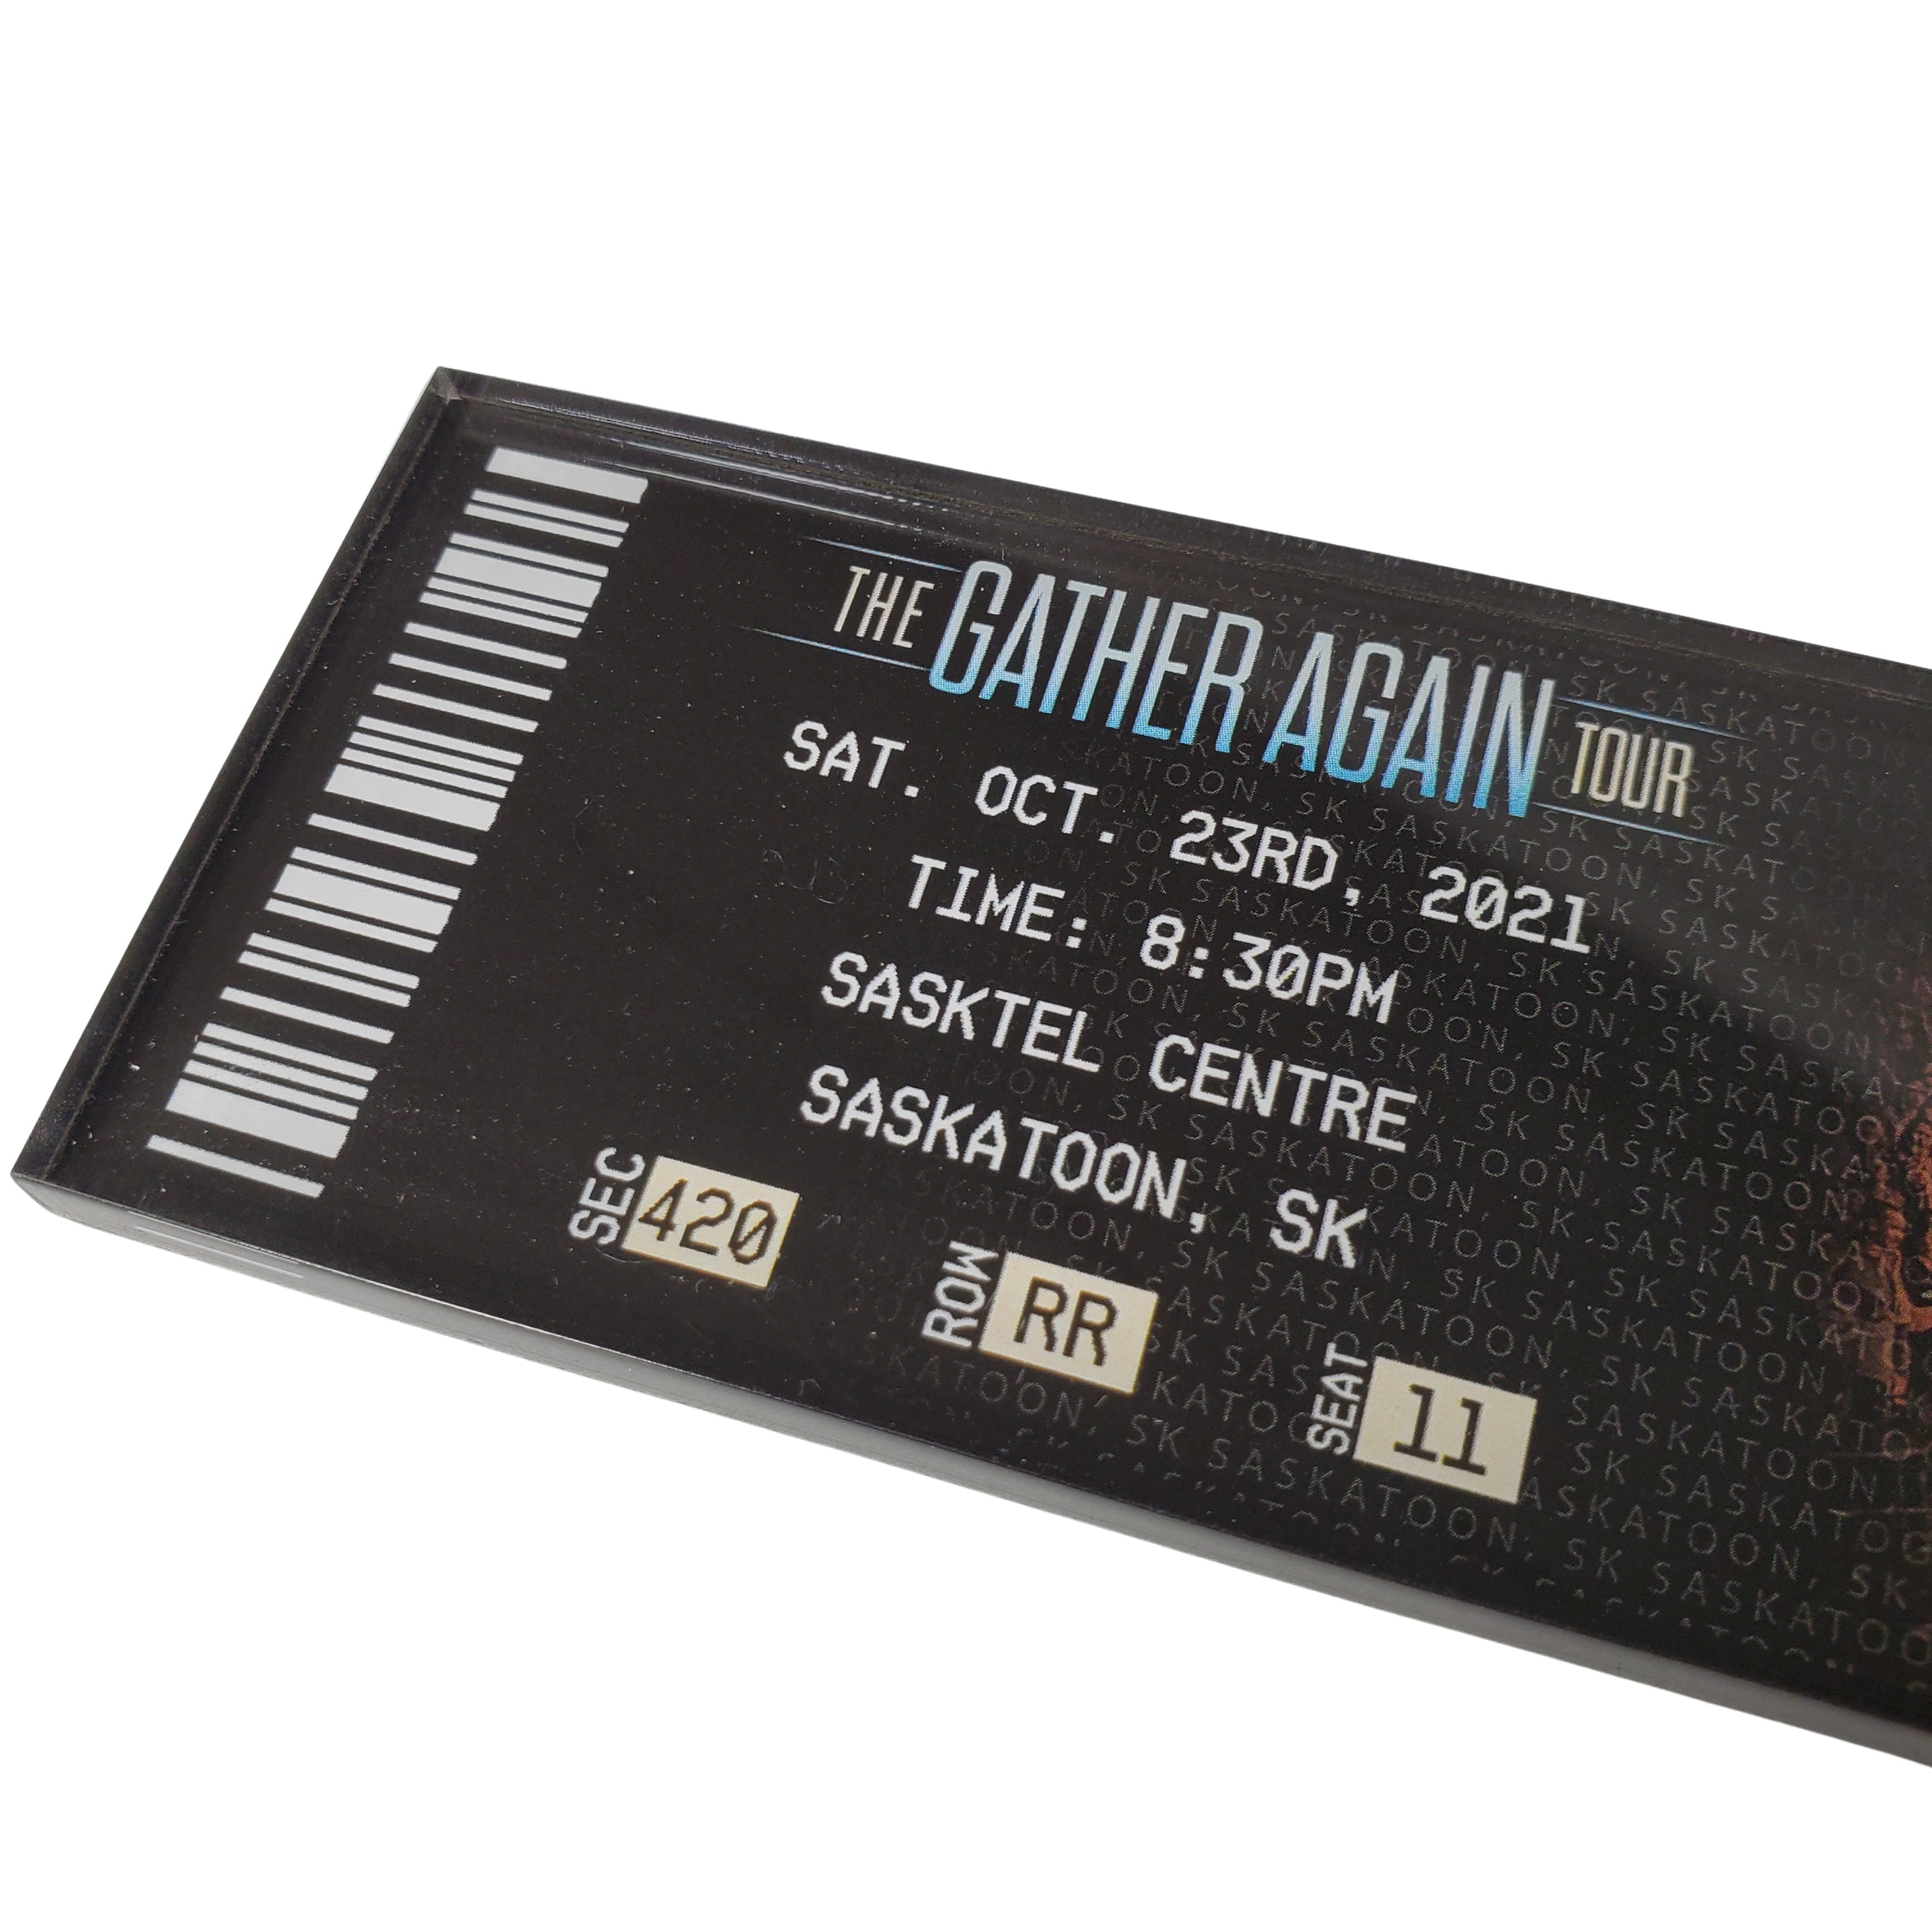 Gather Again Tour Ticket Magnet - Saskatoon, SK